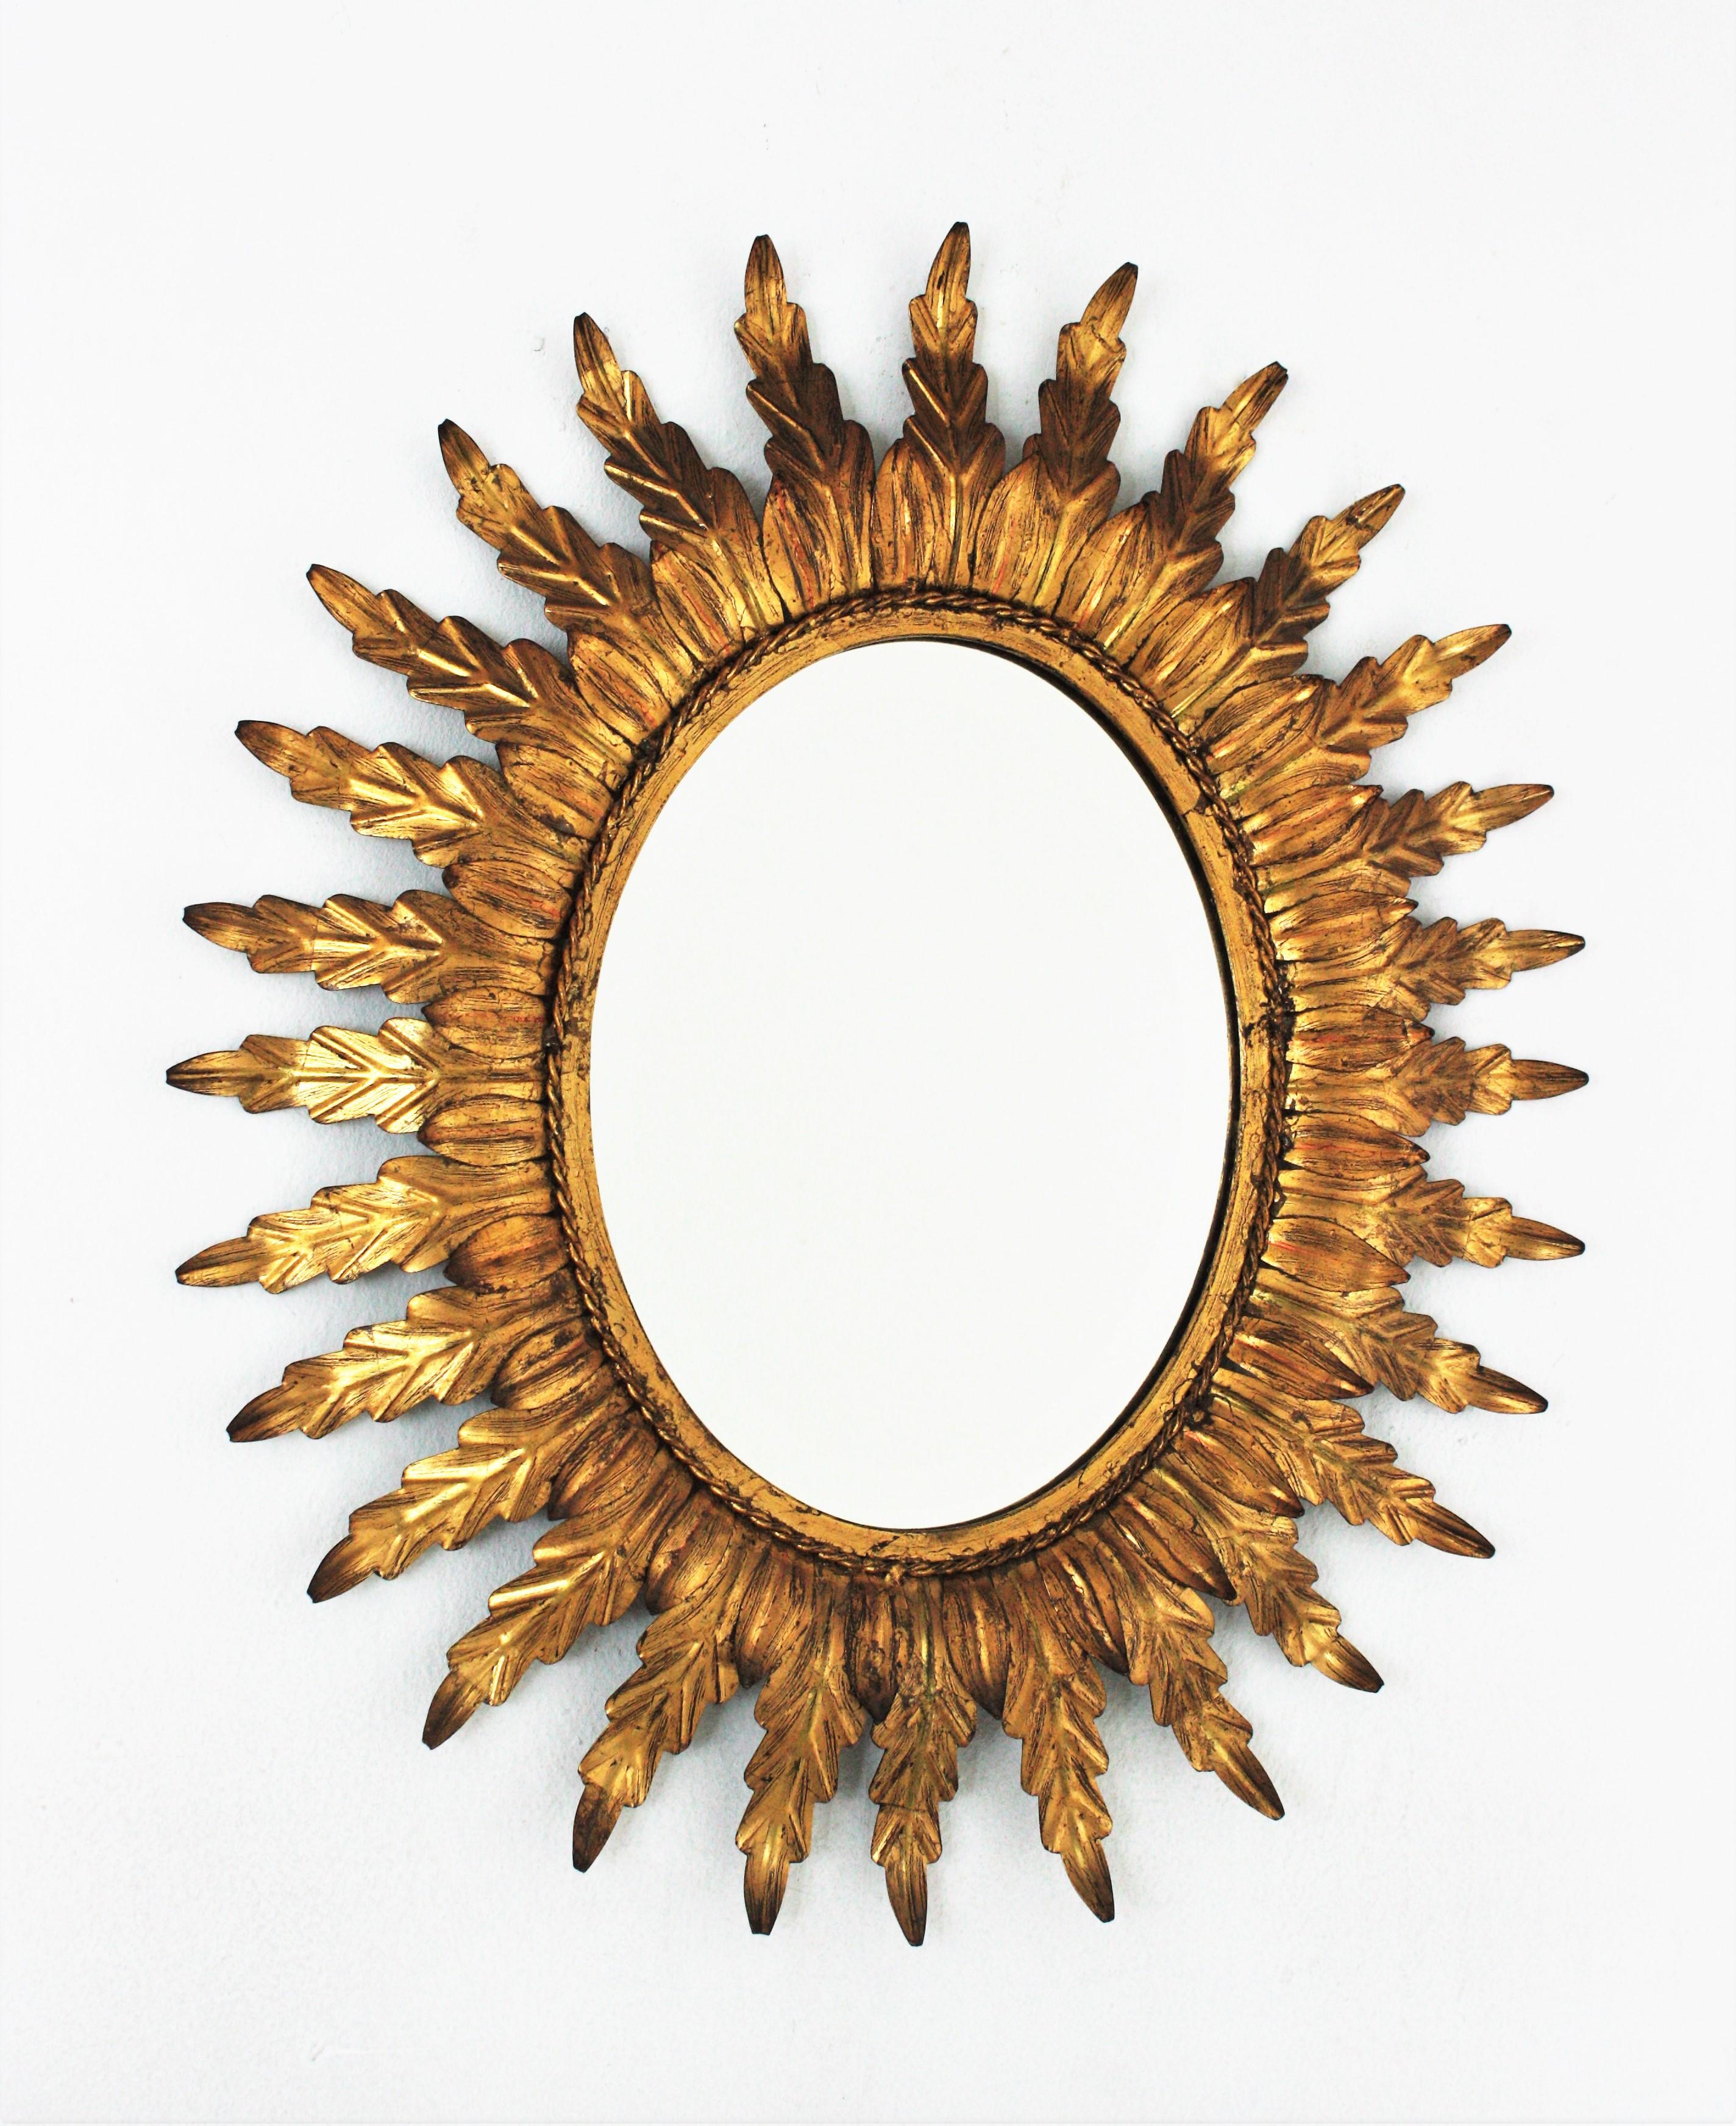 Miroir ovale en forme de soleil, fer doré, feuille d'or. France, années 1960.
Miroir ovale en métal doré de style Hollywood Regency avec cadre à deux feuilles. Le cadre est composé d'une couche de petites feuilles et d'une corde de fer torsadée